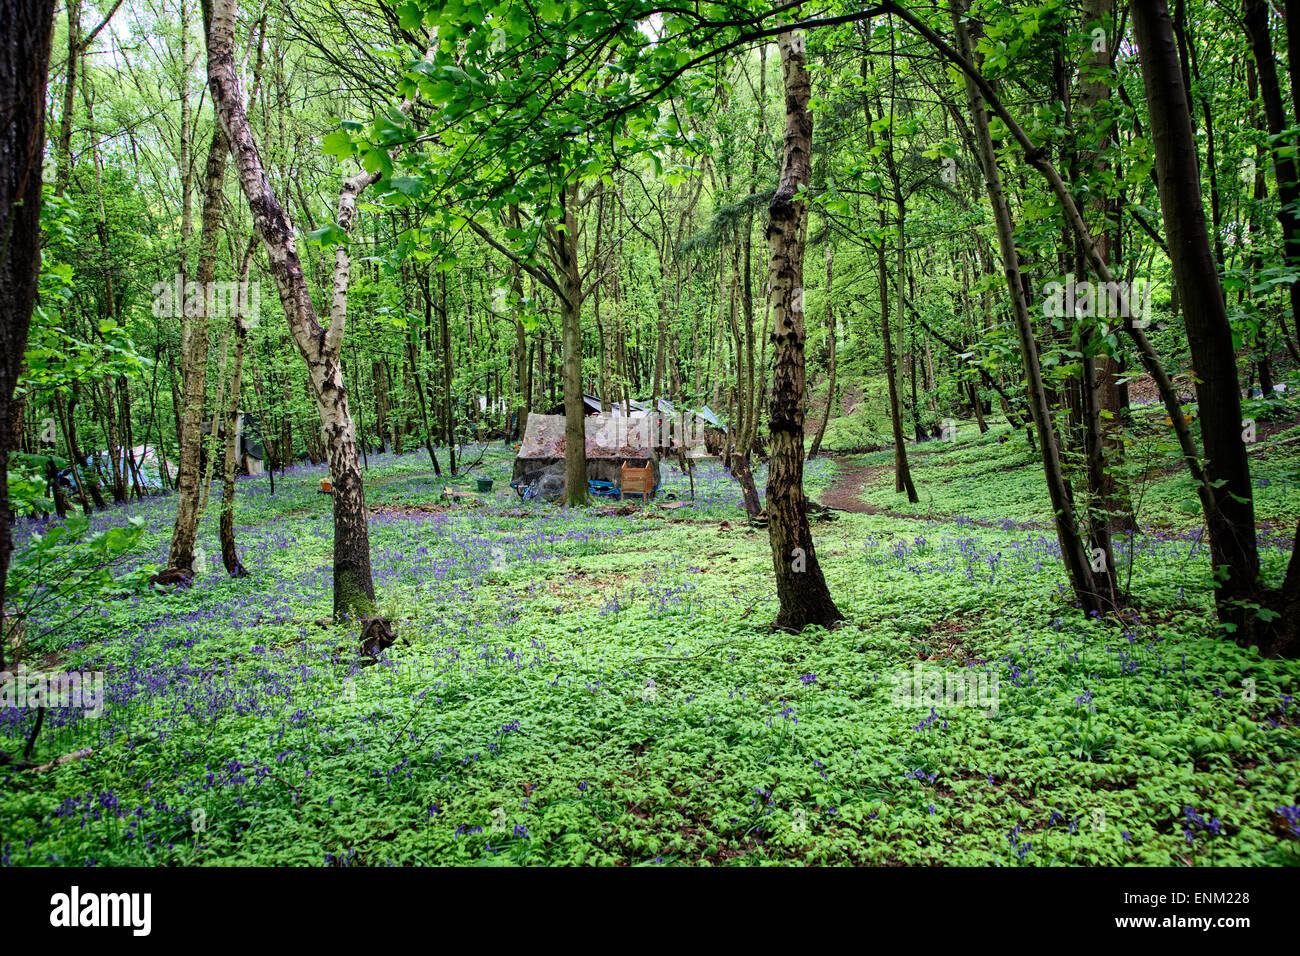 Ein Zelt & Glockenblumen in "Eco Village" in Runnymede Wald. Eine Gemeinschaft von Menschen, die einen alternativen Lebensstil eingerichtet. Stockfoto